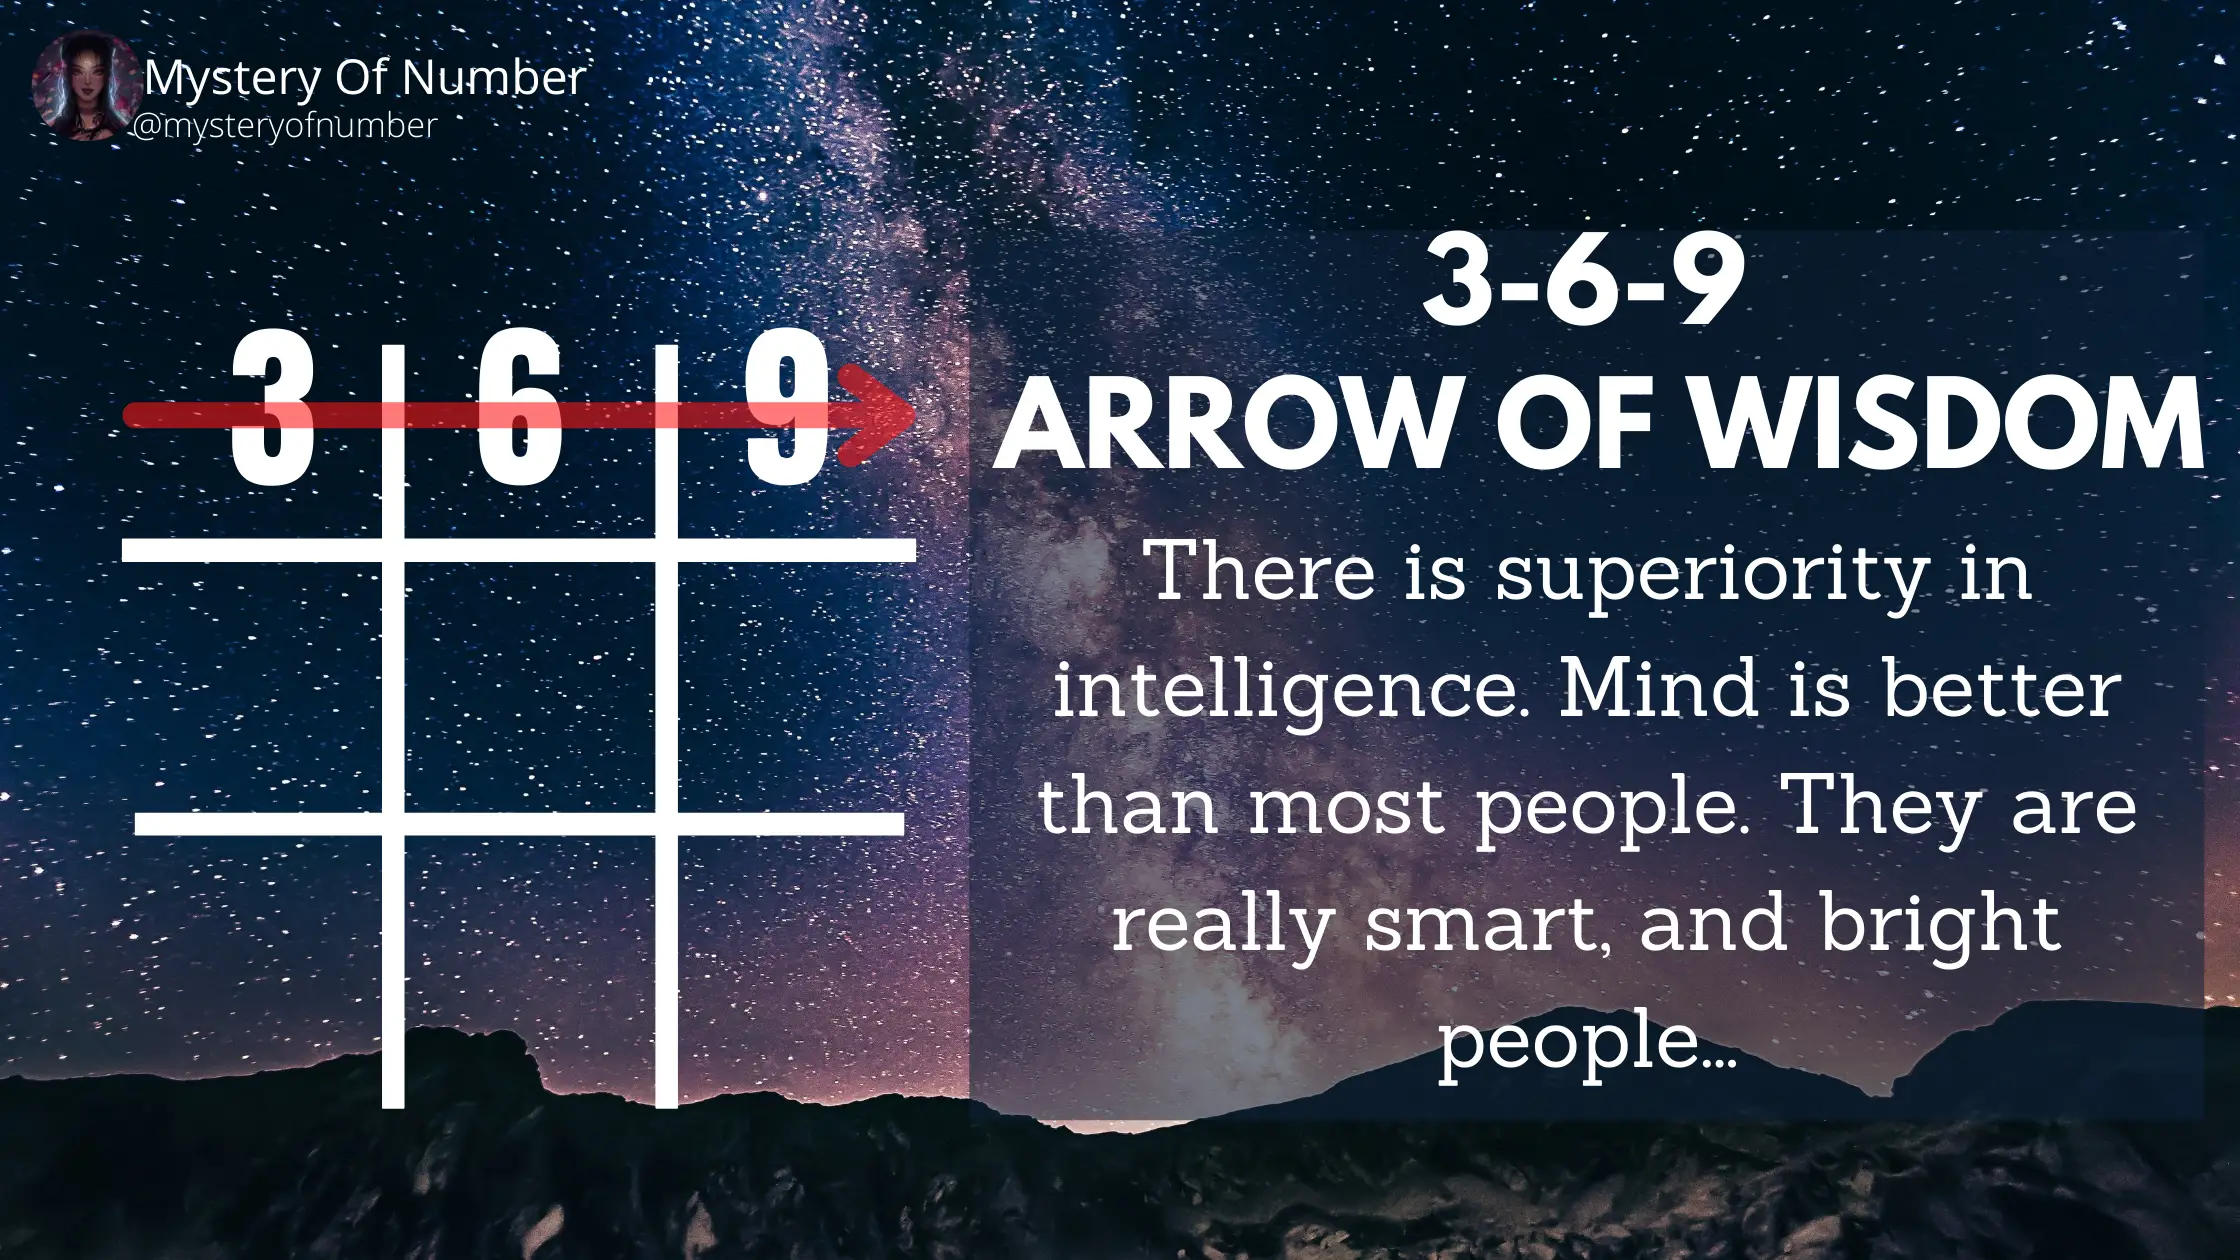 Arrow of wisdom 3-6-9: Arrows in numerology